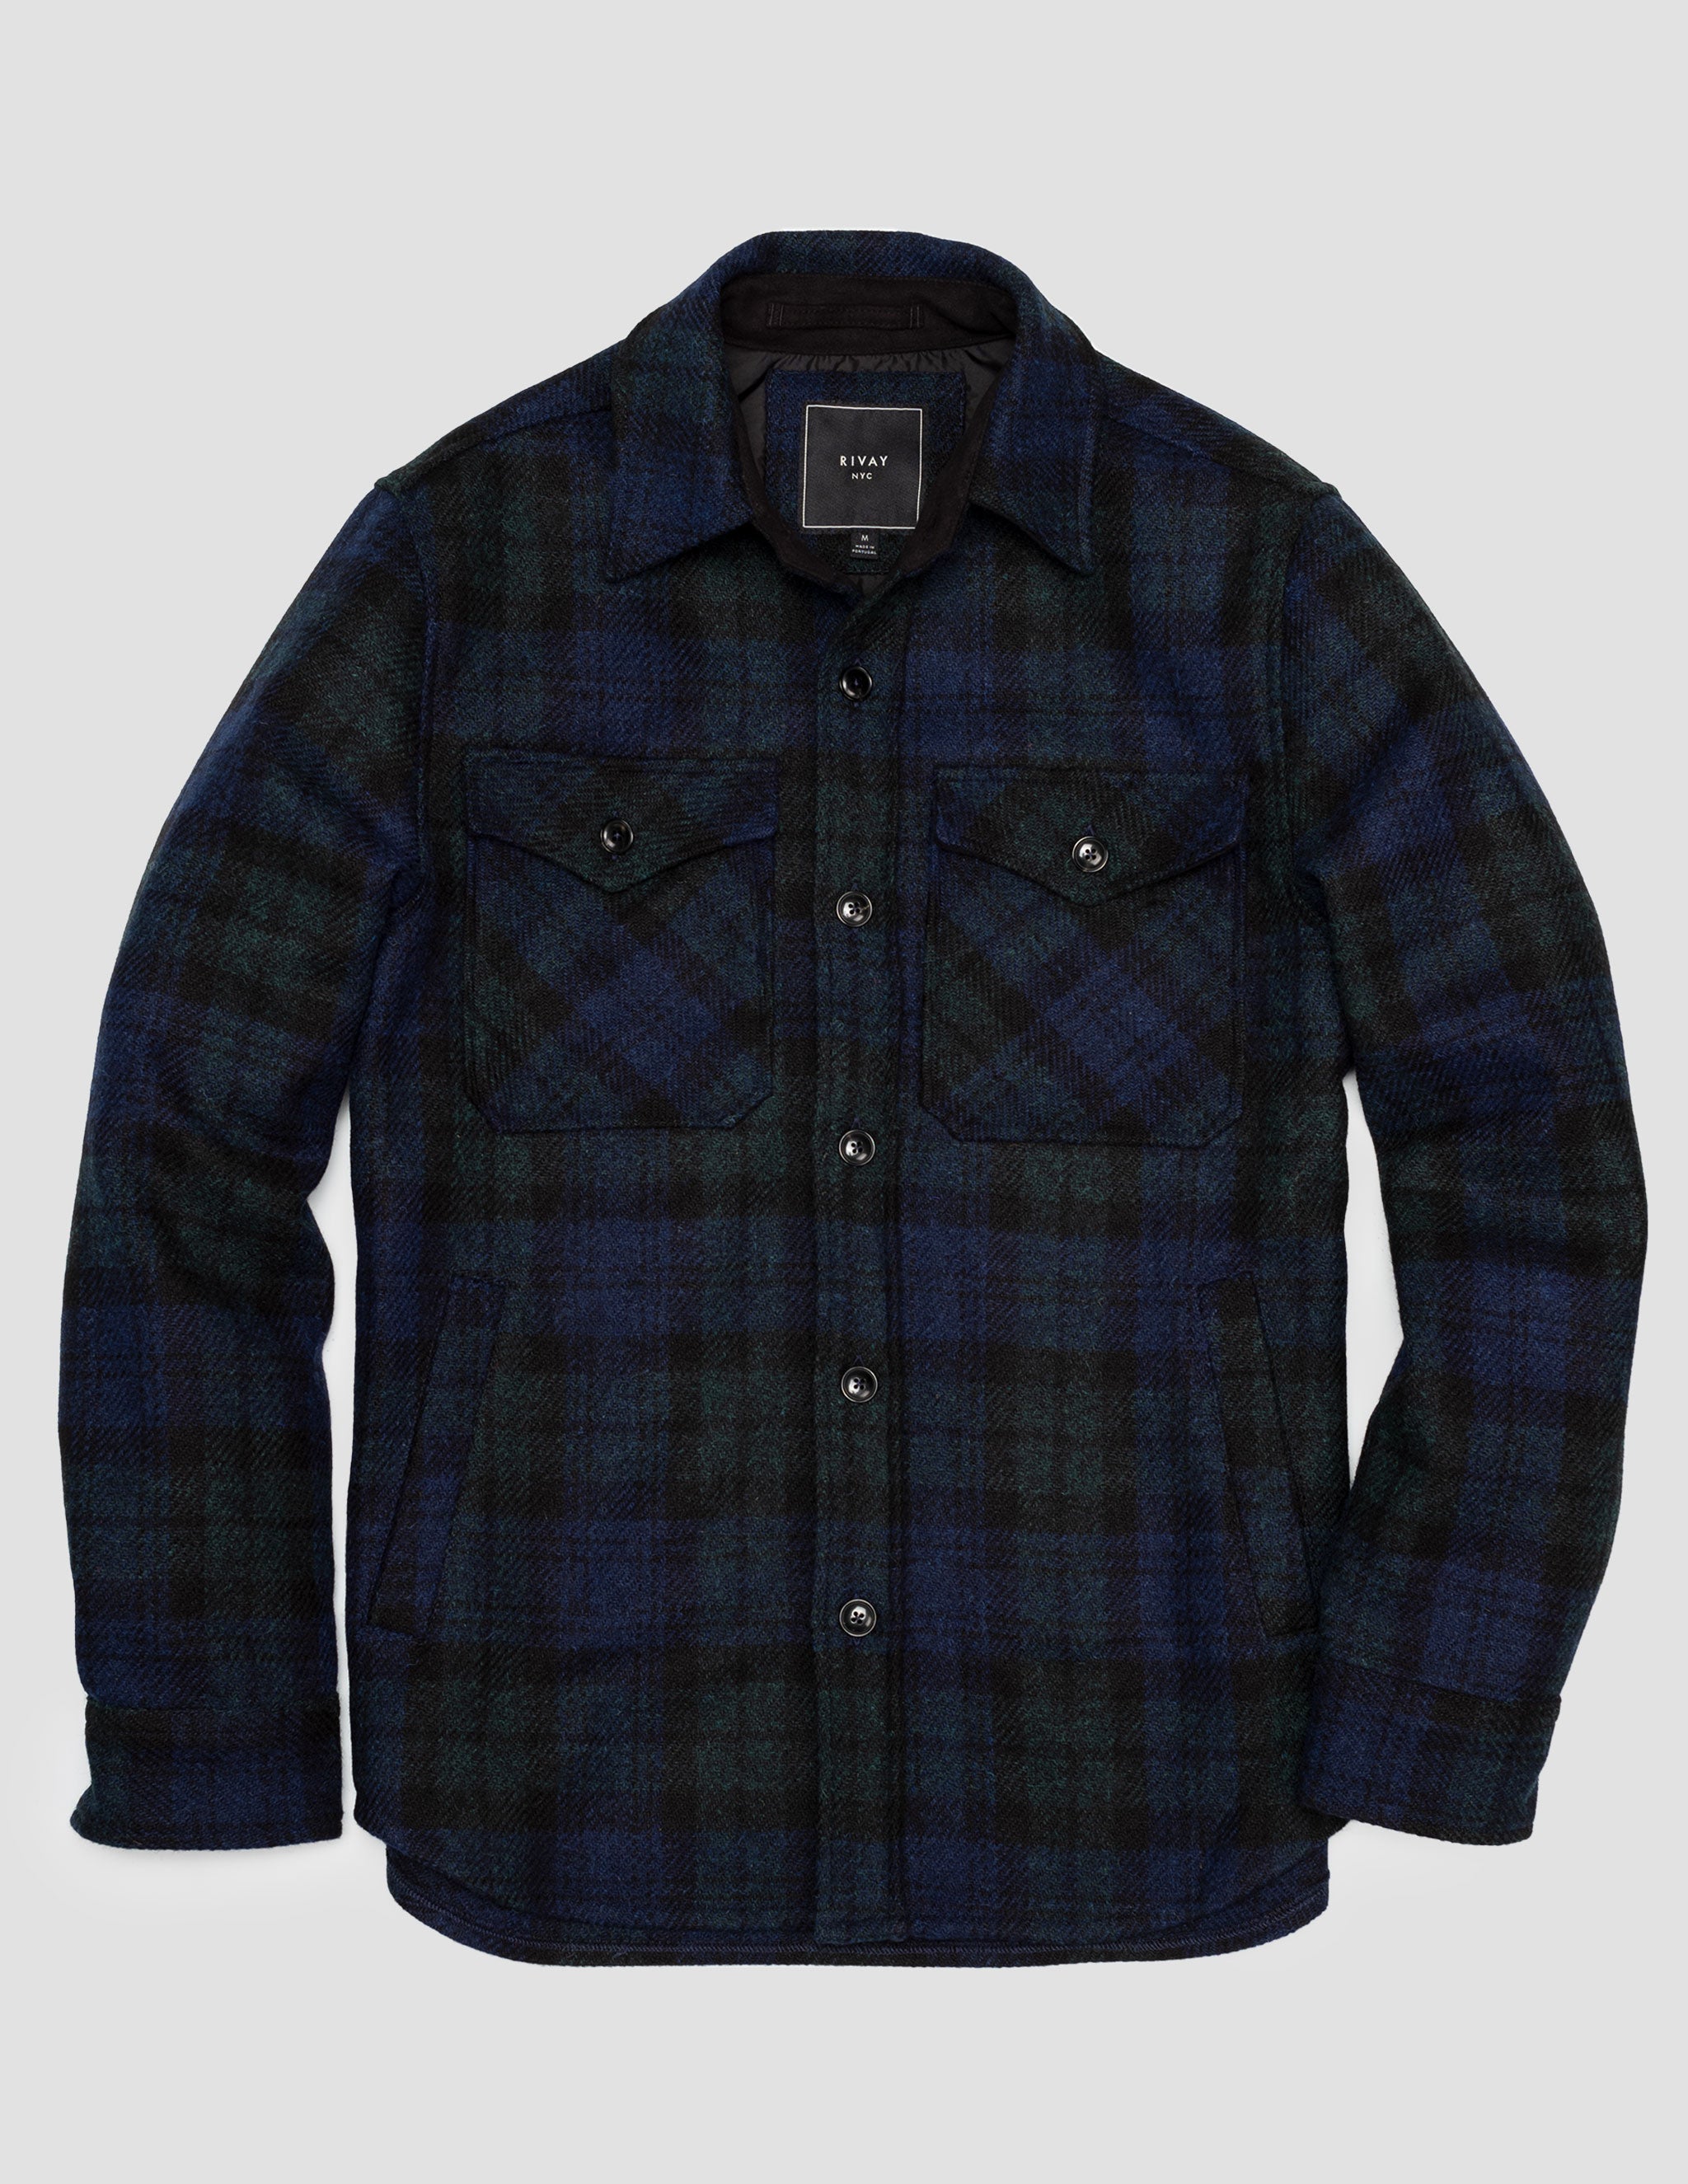 Harris Tweed Wool CPO Shirt Jacket in Blackwatch Plaid